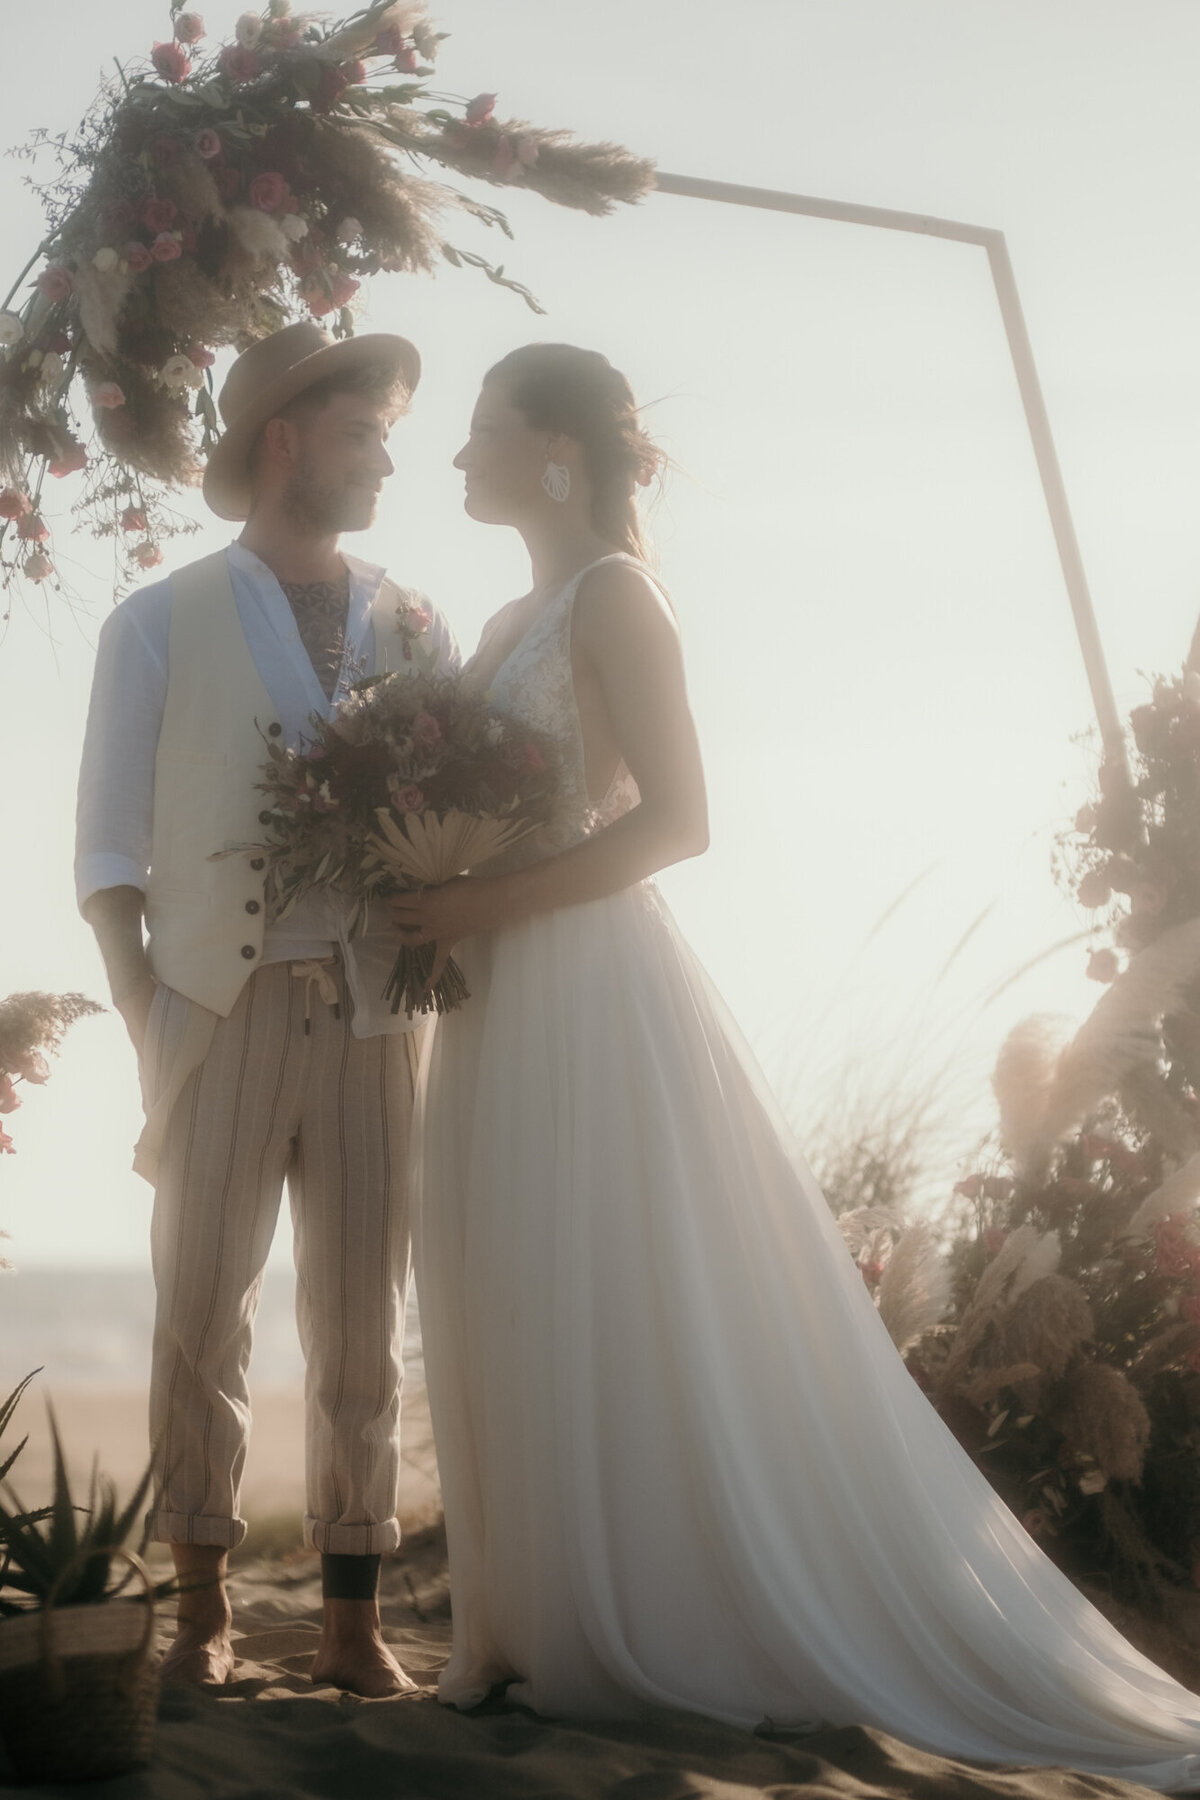 Die Sonne strahlt von hinten auf das sich glücklich anblickende, unter dem Hochzeitsbogen stehende Paar.